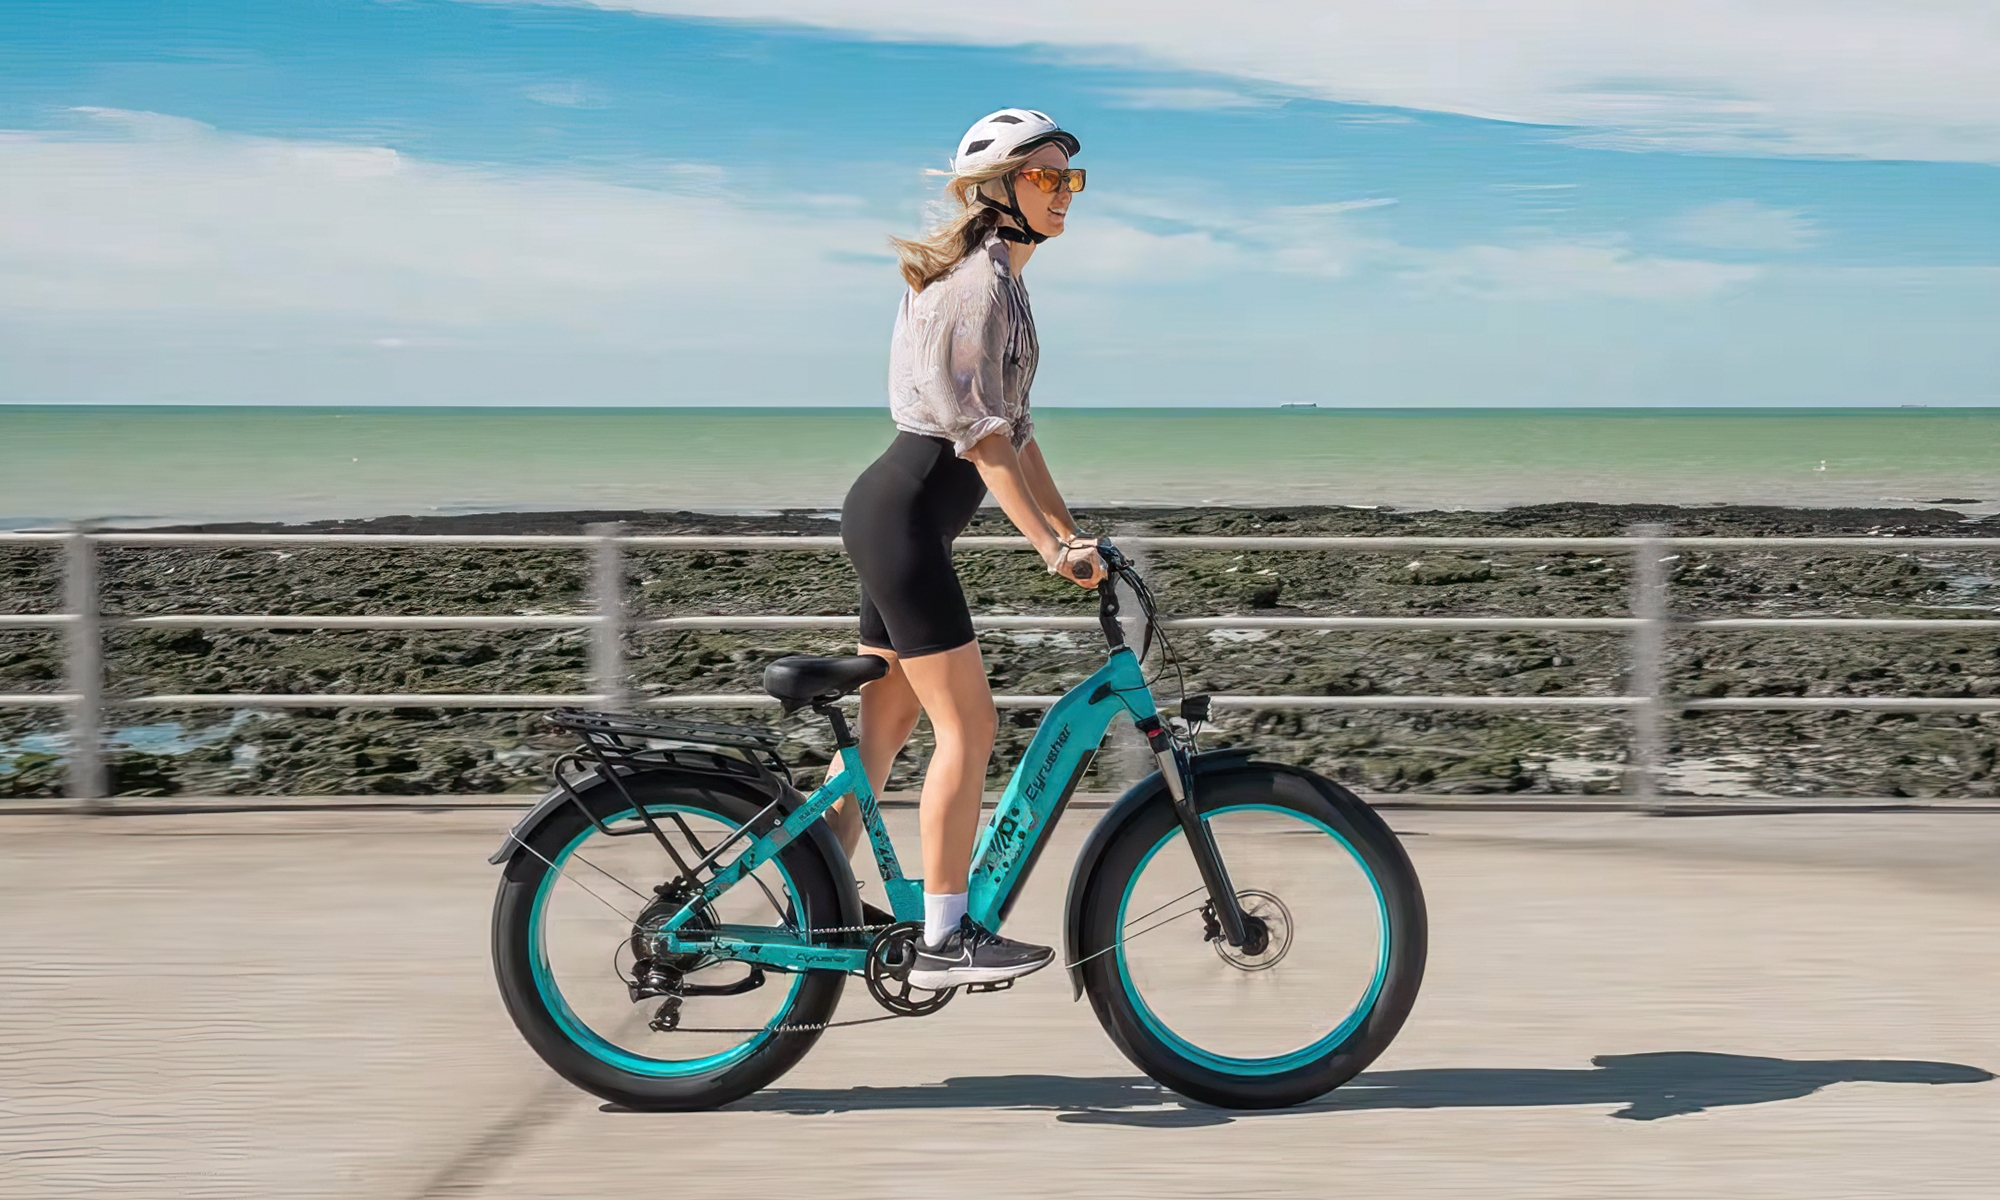 Las bicicletas eléctricas con acelerador te permiten controlar totalmente la velocidad del vehículo sin tener que pedalear.